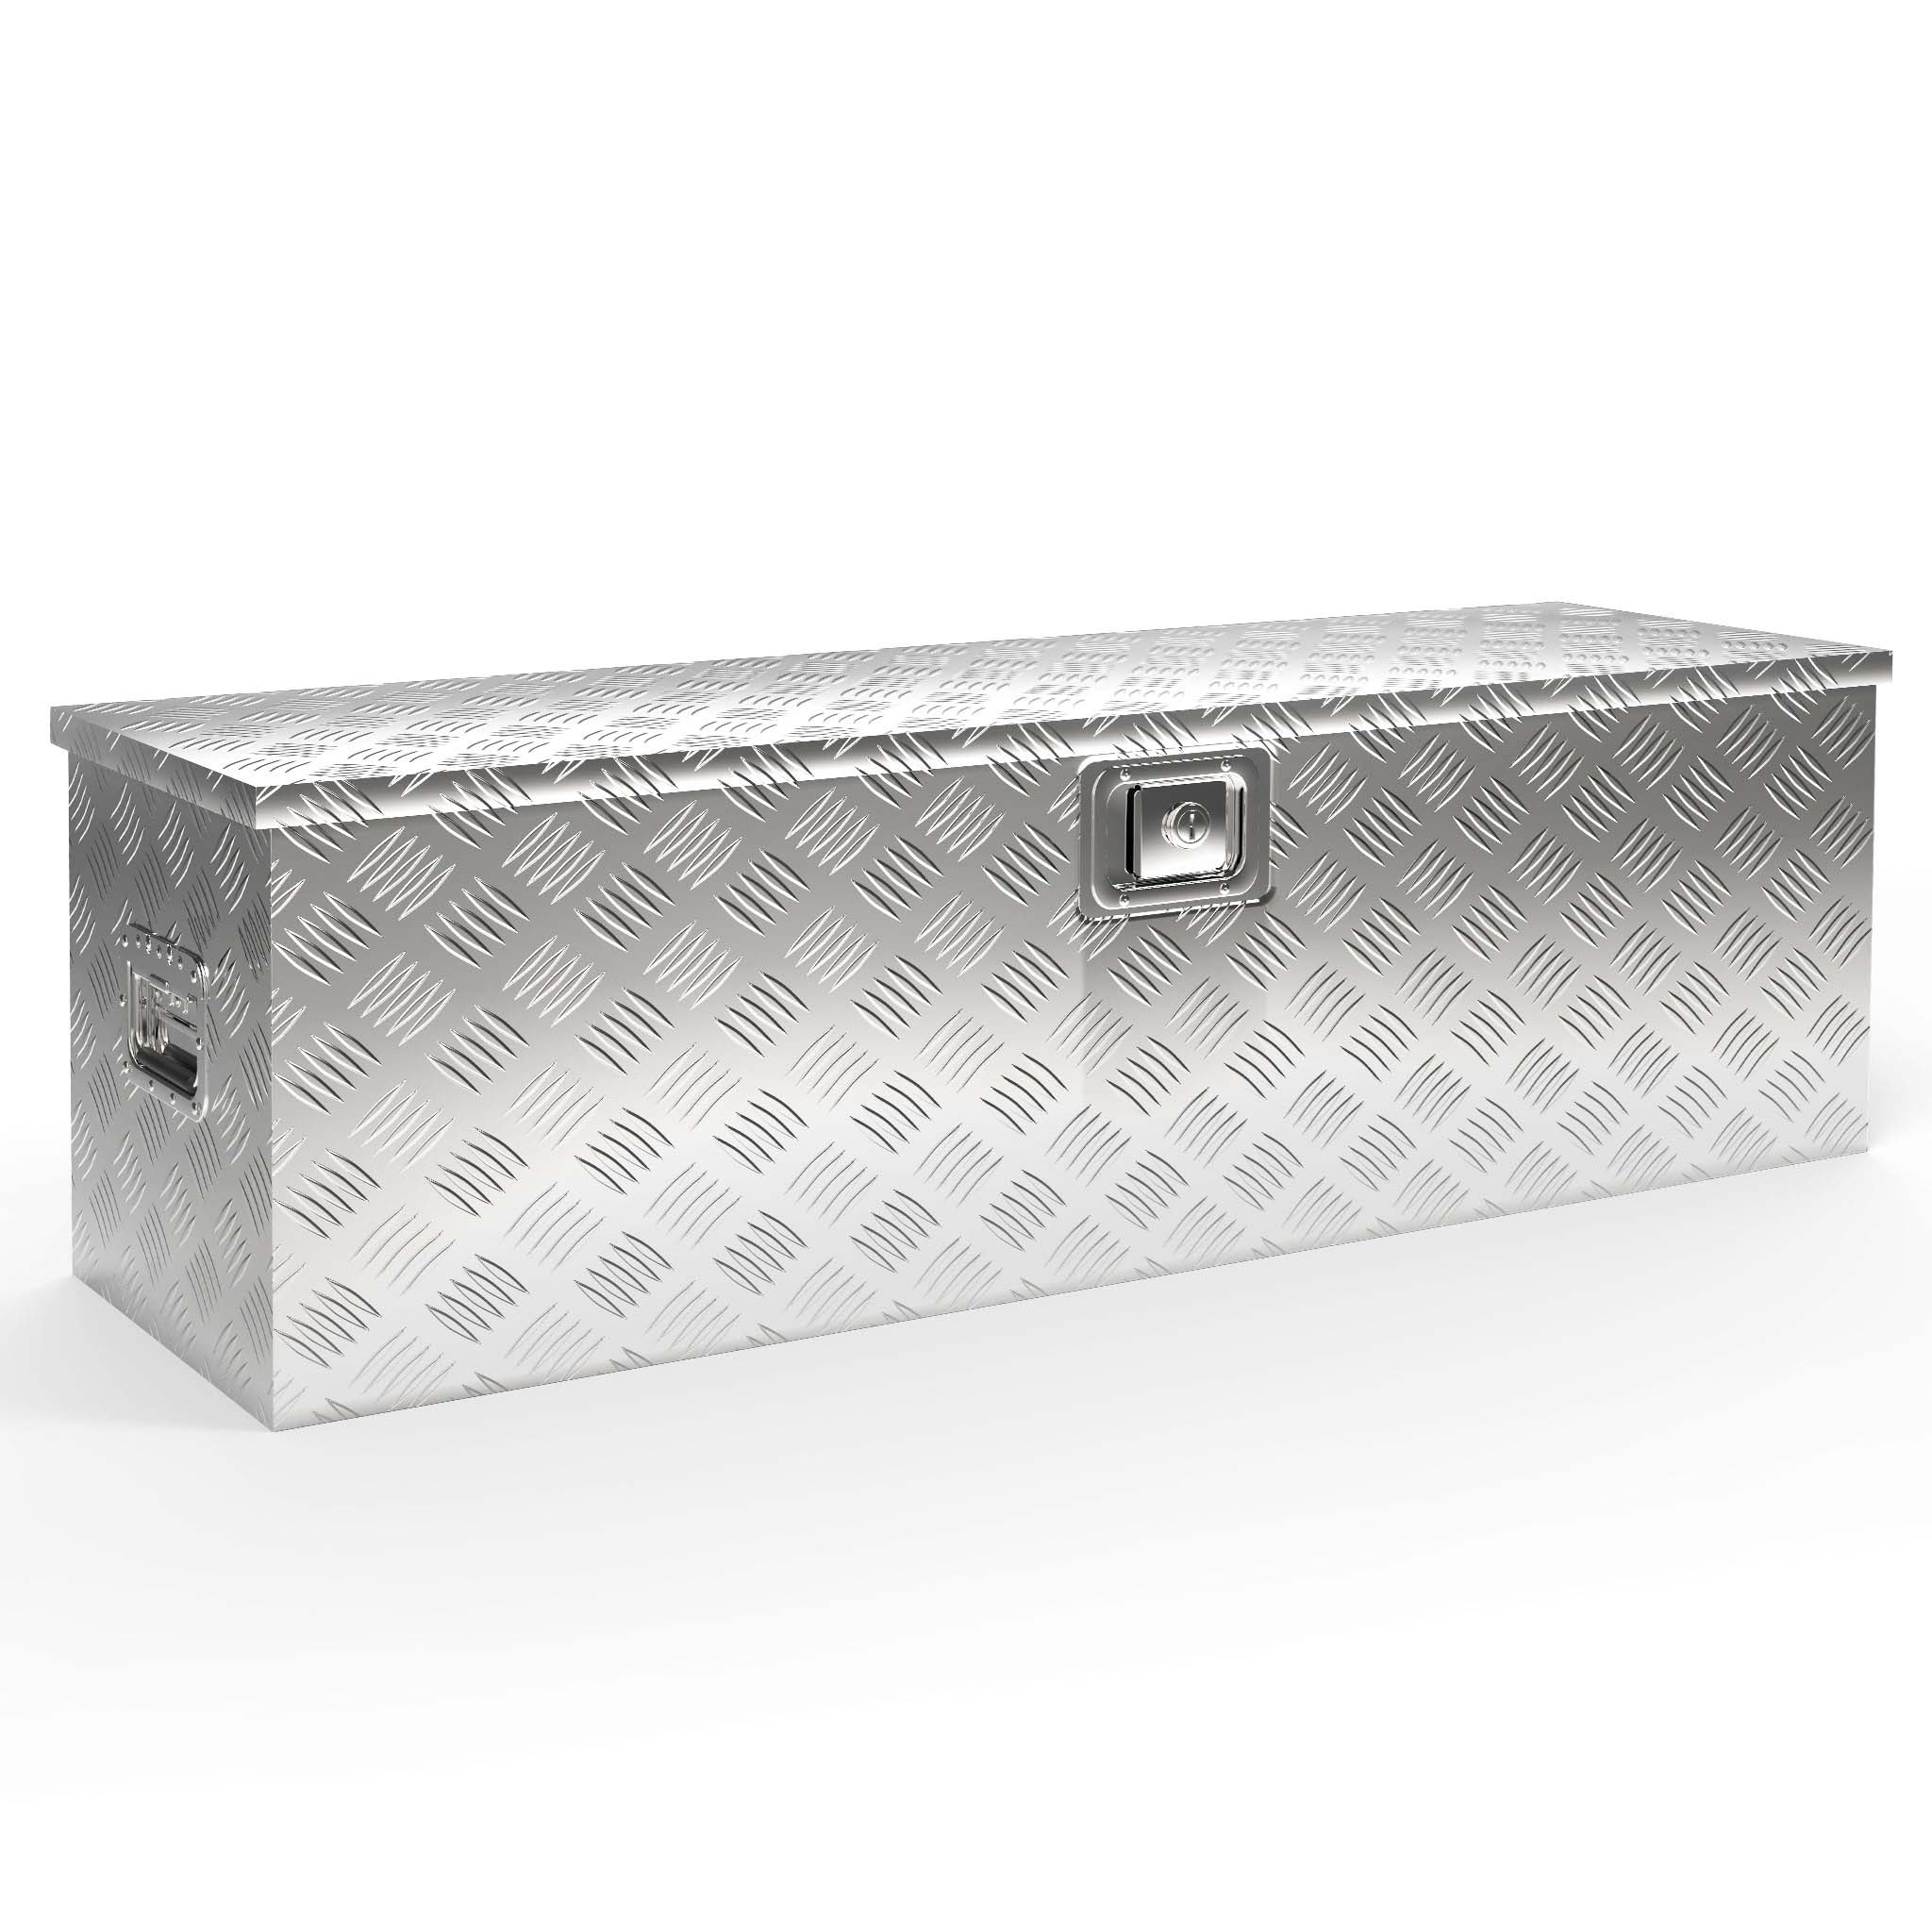 Baule box cassone cesta contenitore alluminio 82x33x30 cassa bauletto  impermeabile BAU30F